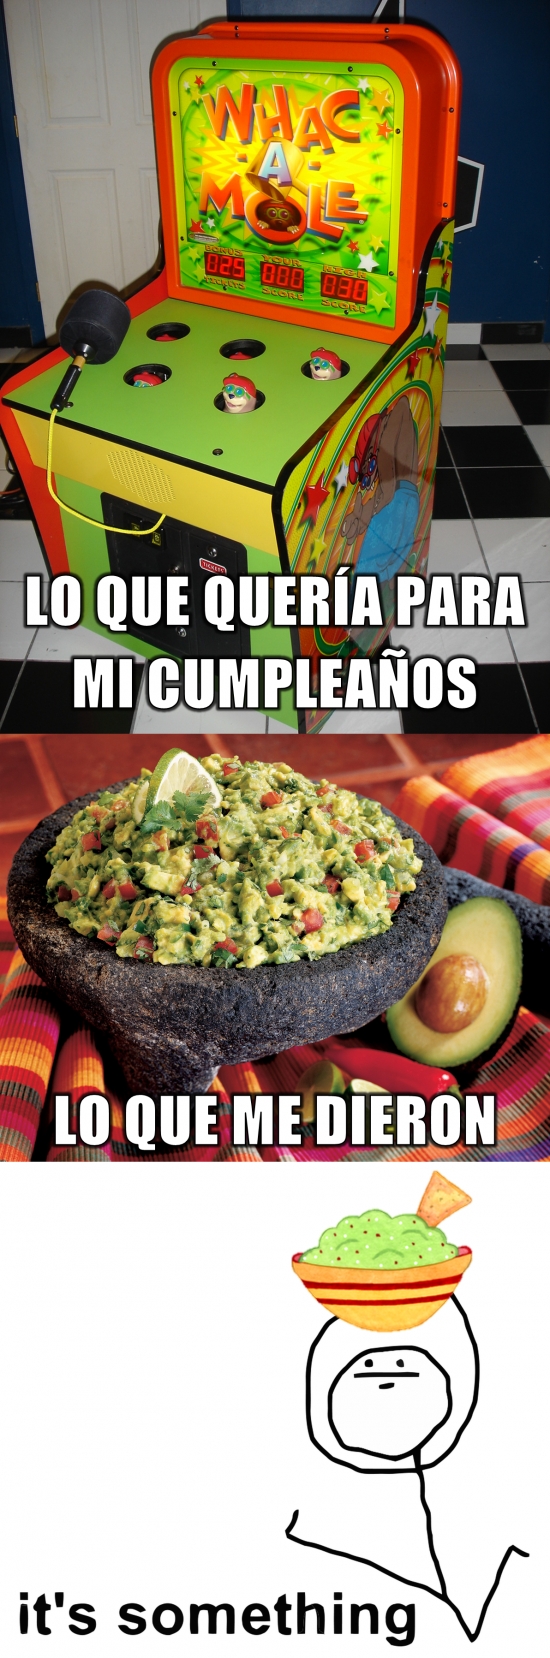 Its_something - No confundir guacamole con whcak-a-mole